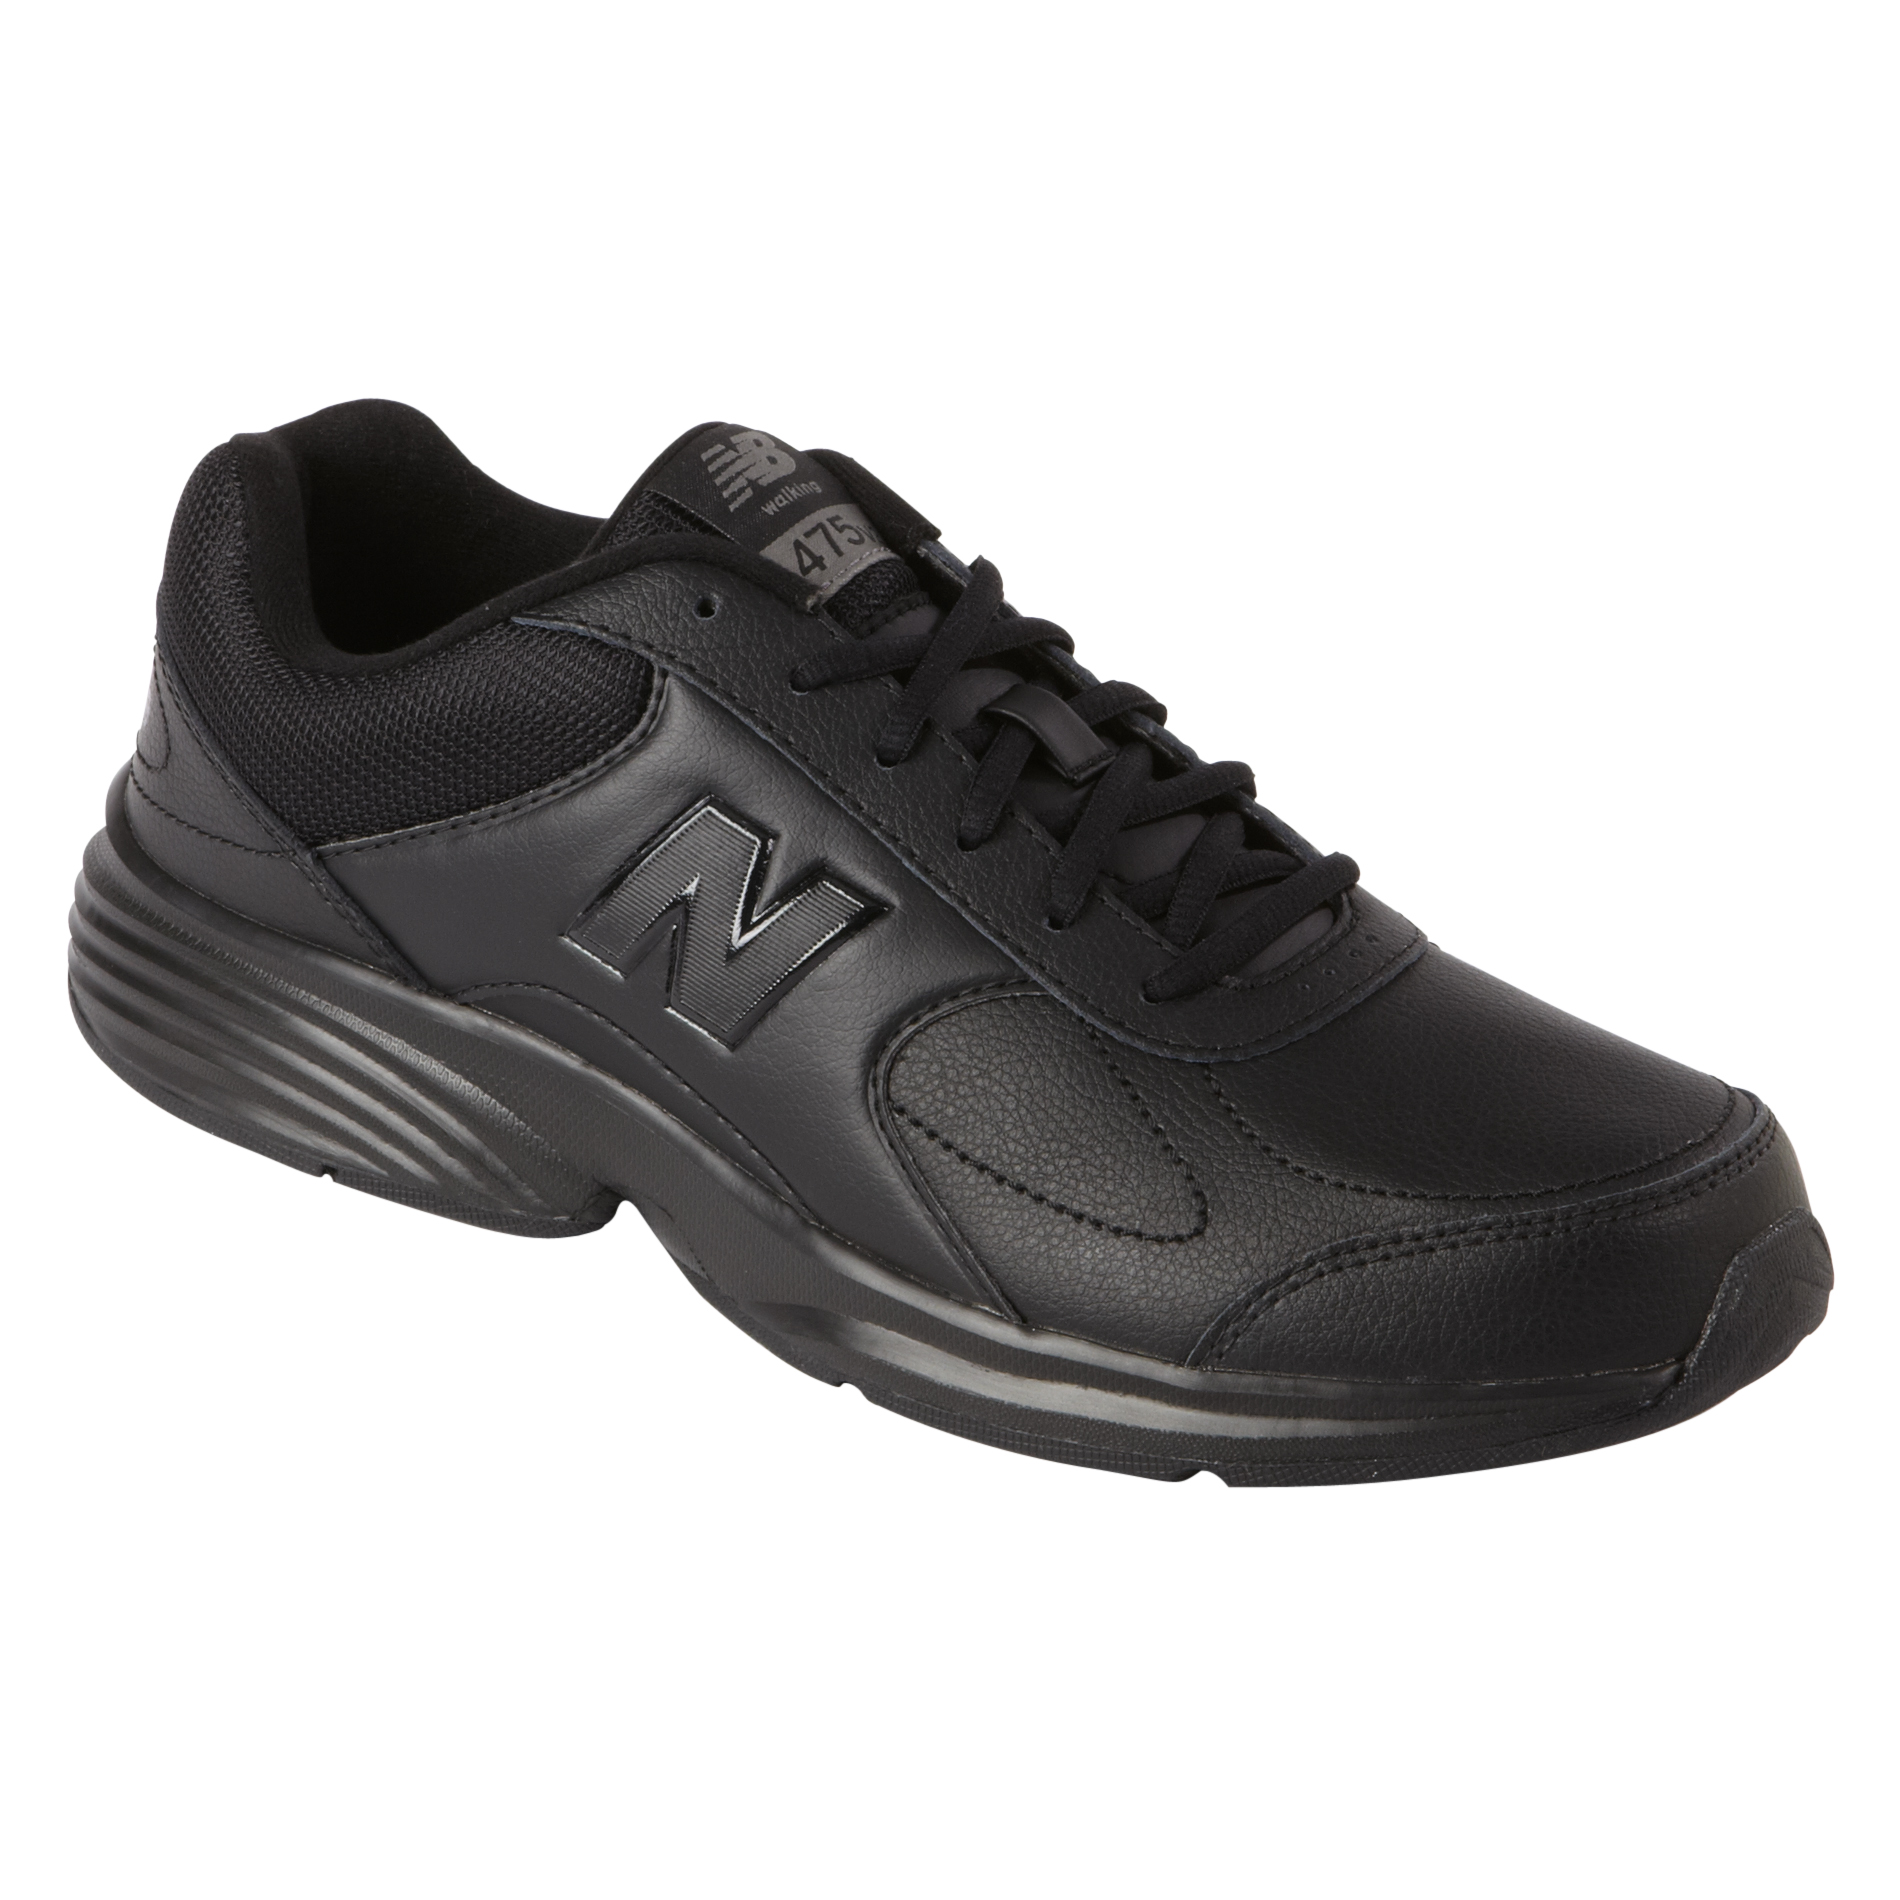 UPC 888098336719 - New Balance Men's 475v2 Wide Walking Shoes Black ...